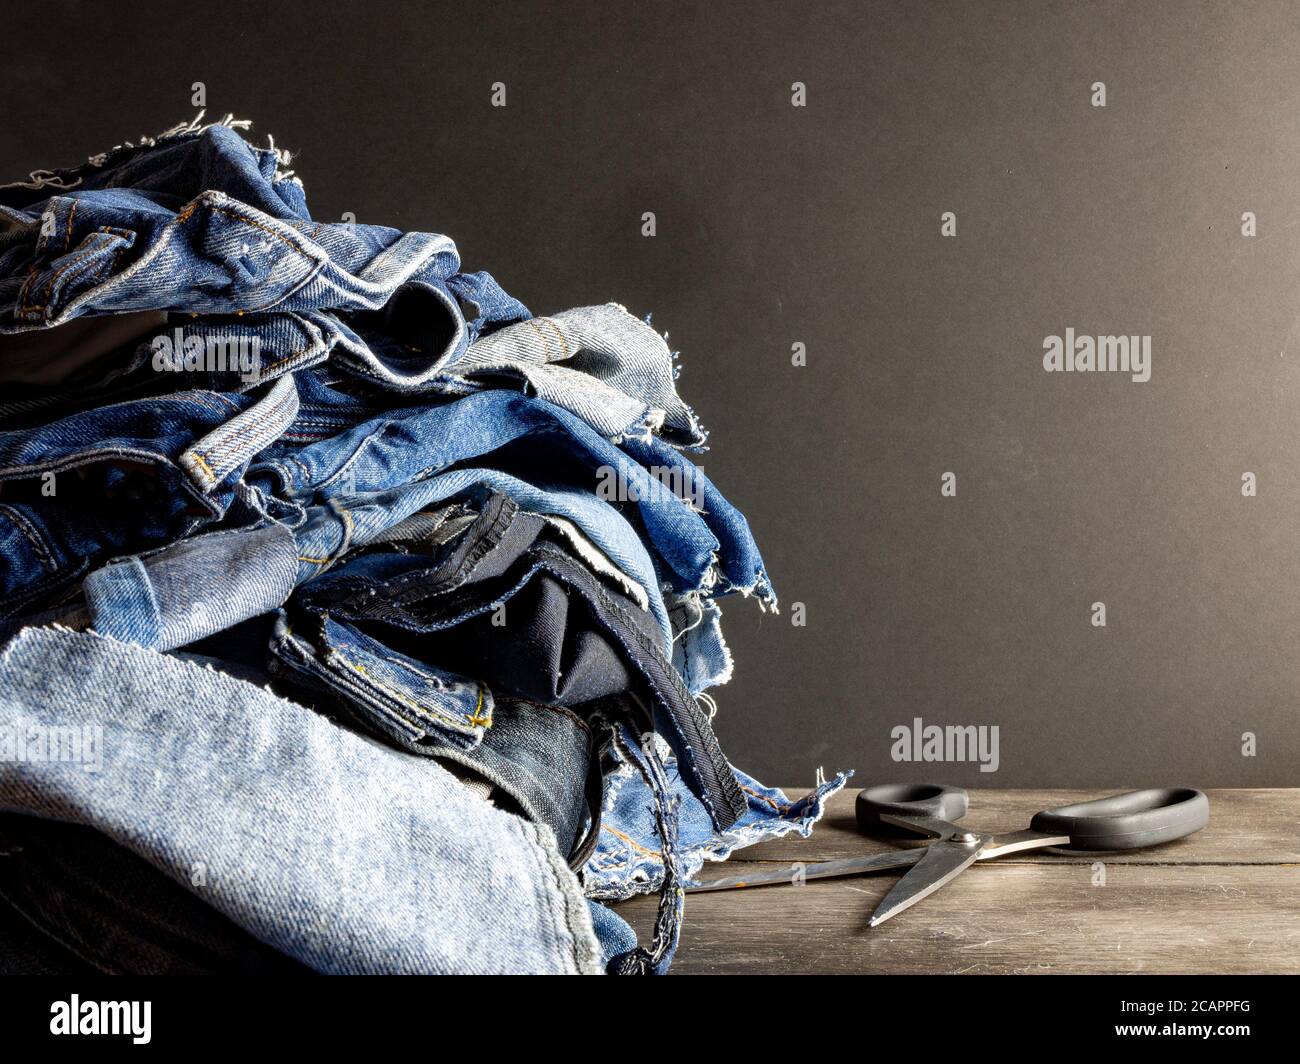 Pila de jeans viejos listos para el reciclaje Foto de stock